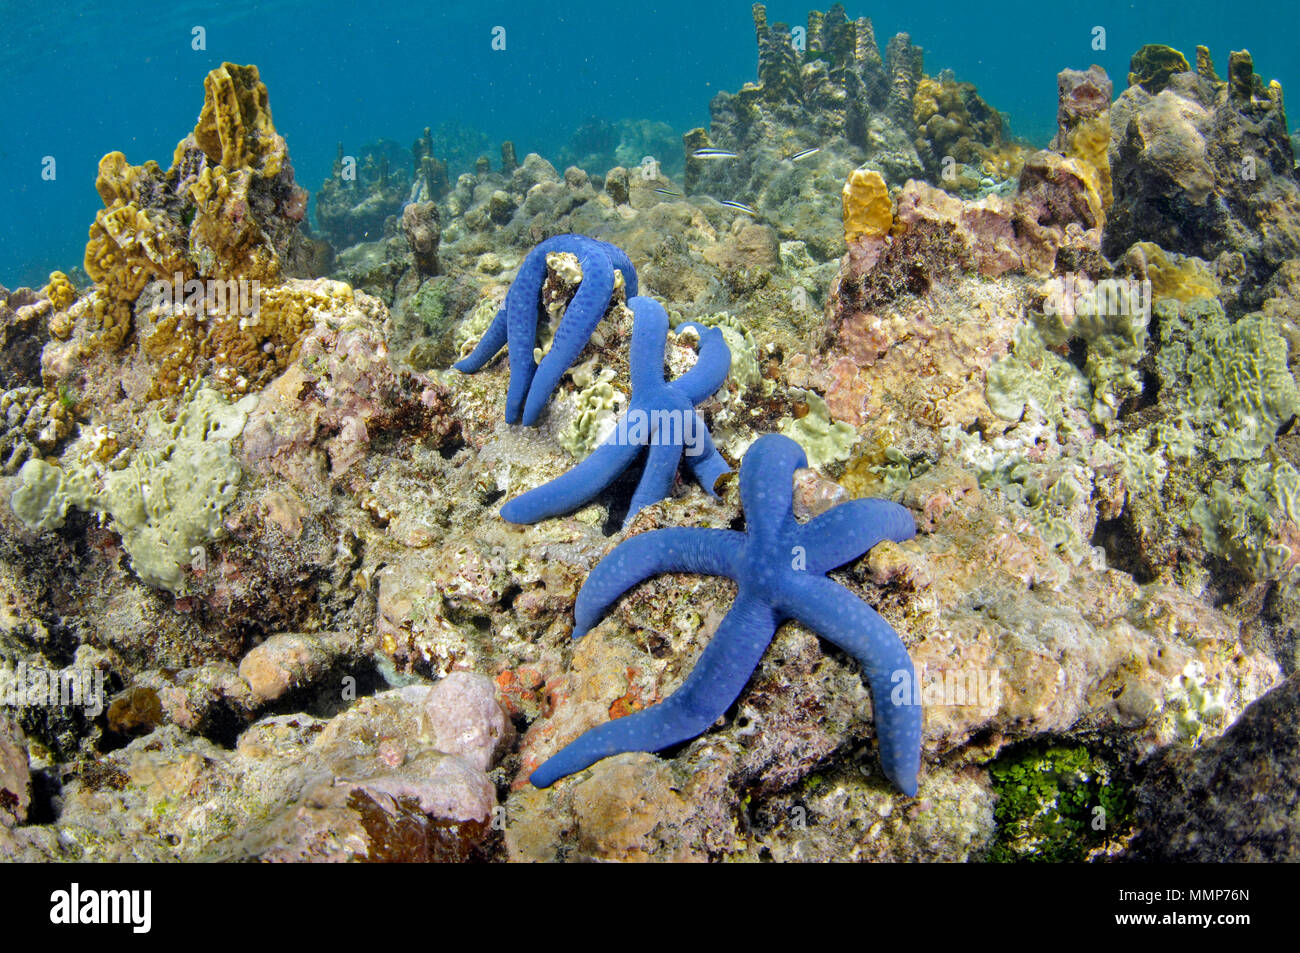 Trois étoiles de mer bleu, Linckia laevigata, sur un récif de corail, corail noir, l'île de Pohnpei, États fédérés de Micronésie Banque D'Images